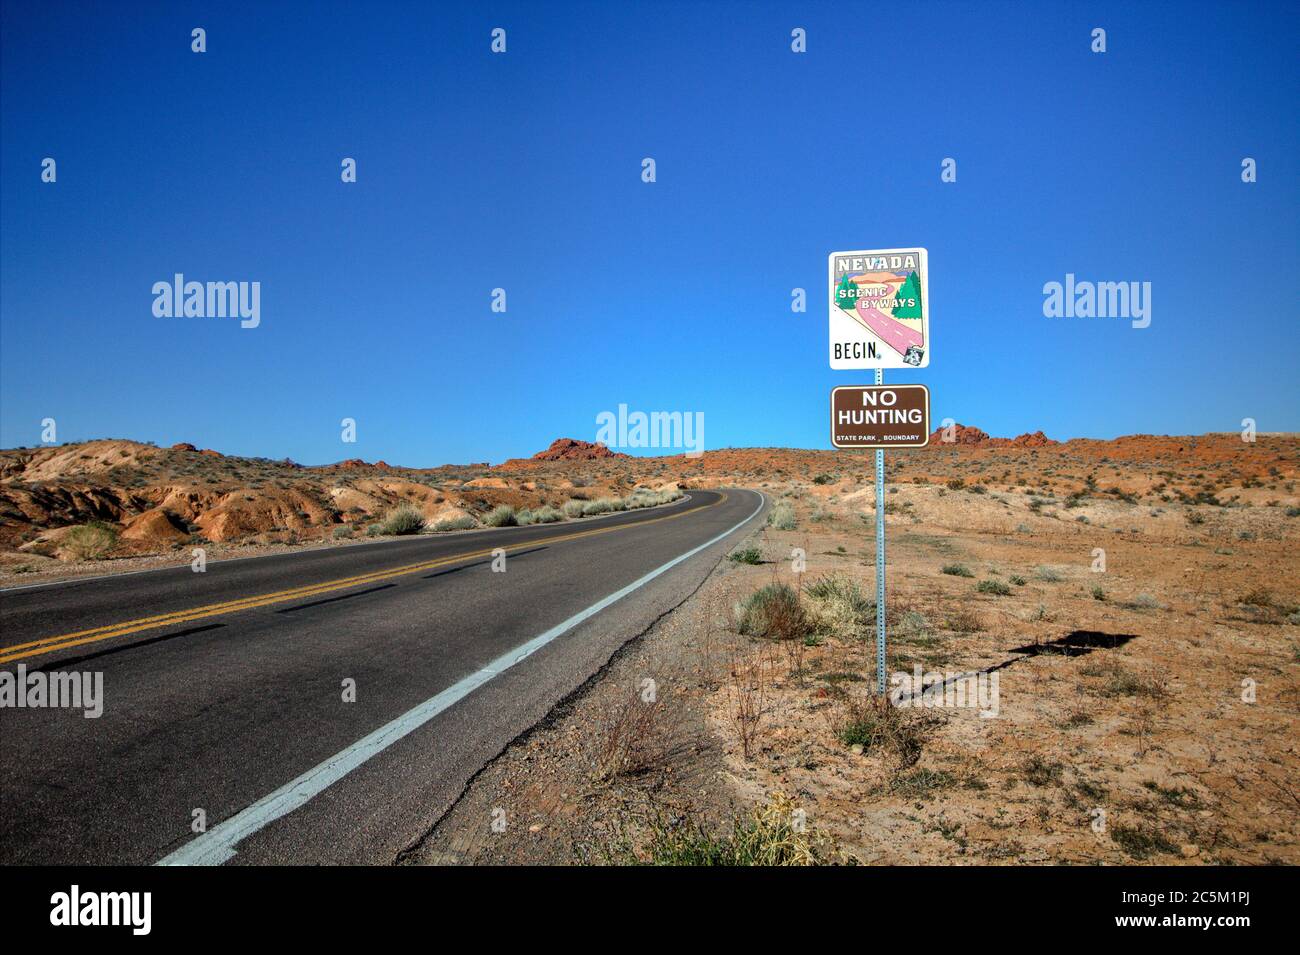 Panneau désignant la Nevada Highway 169 comme un chemin pittoresque d'état. L'autoroute à deux voies traverse la Vallée de feu offrant une montagne et un désert pittoresques Banque D'Images